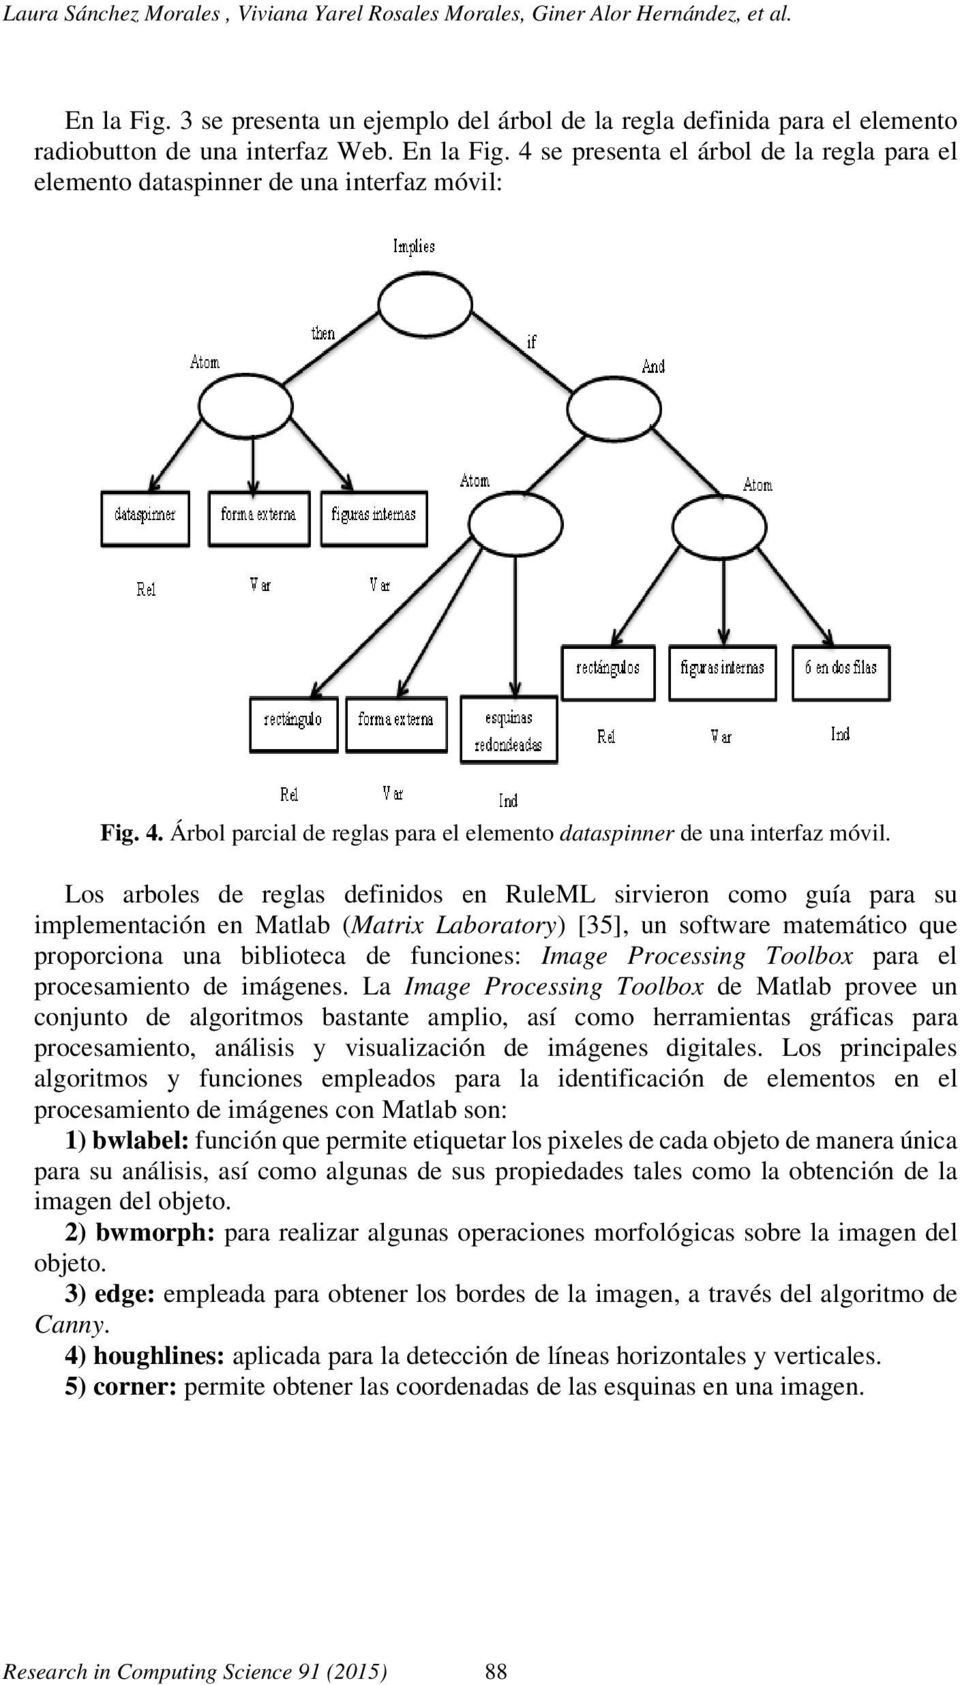 Los arboles de reglas definidos en RuleML sirvieron como guía para su implementación en Matlab (Matrix Laboratory) [35], un software matemático que proporciona una biblioteca de funciones: Image